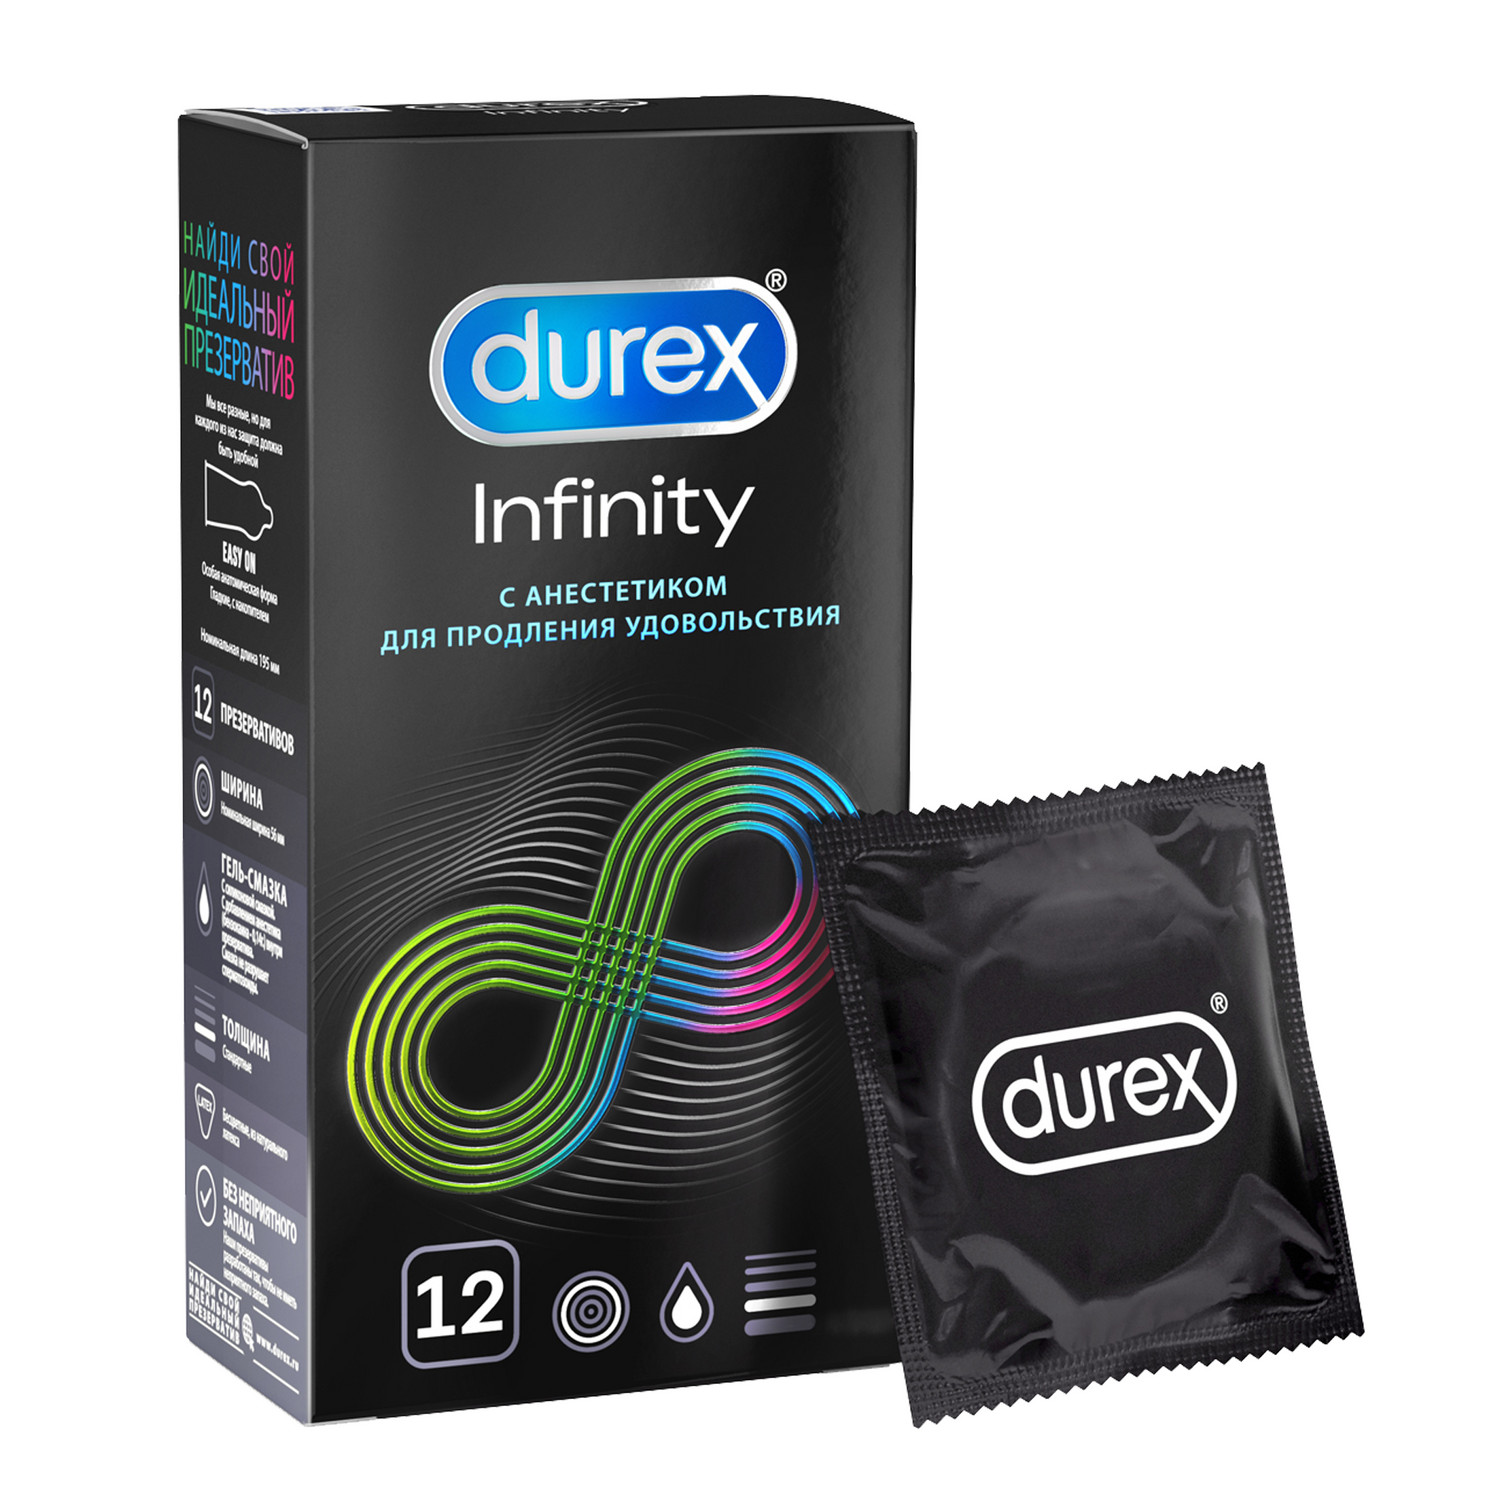 Дюрекс презервативы Инфинити с анестетиком №12